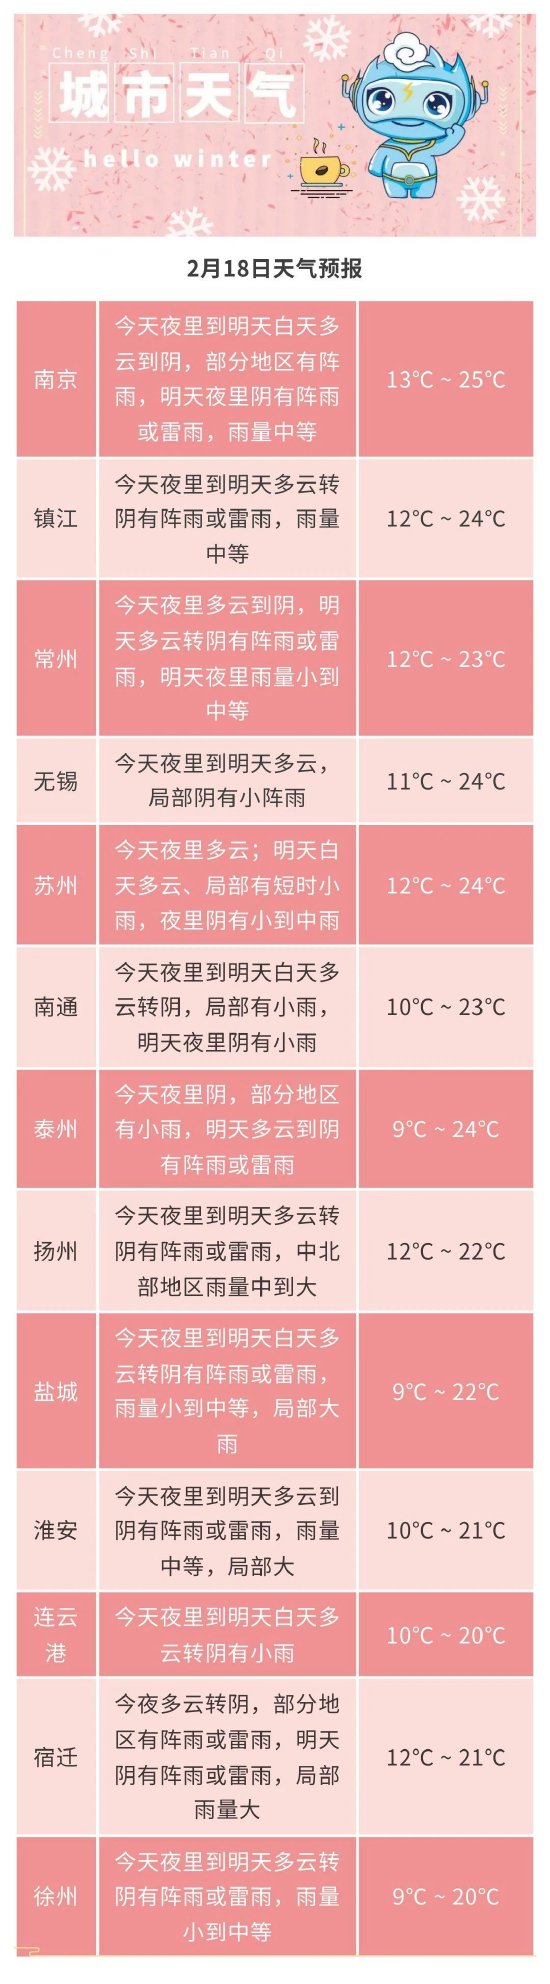 江苏今日升温至24℃ 随后迎来雨雪天气